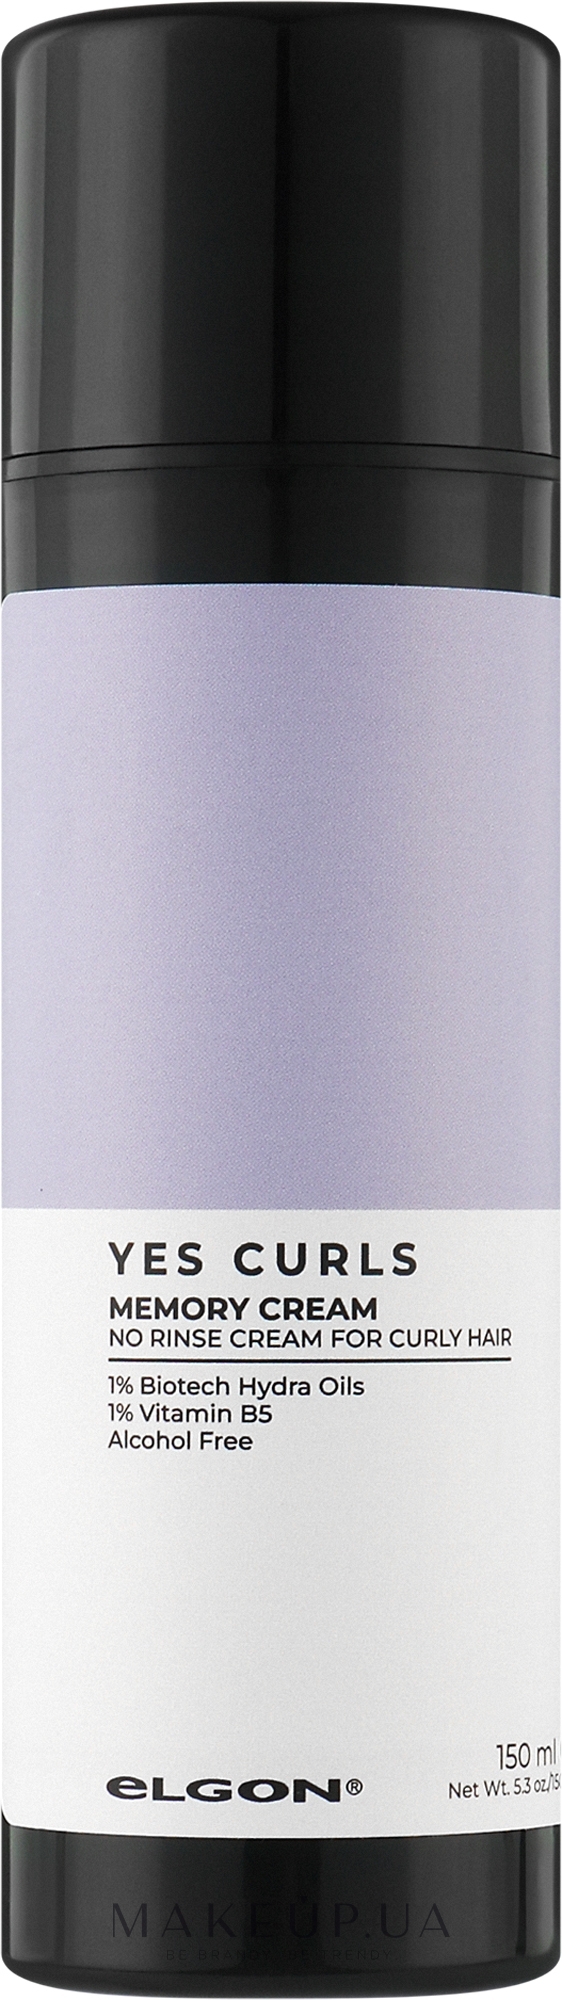 Крем для локонов с эффектом памяти - Elgon Yes Curls Memory Cream — фото 150ml